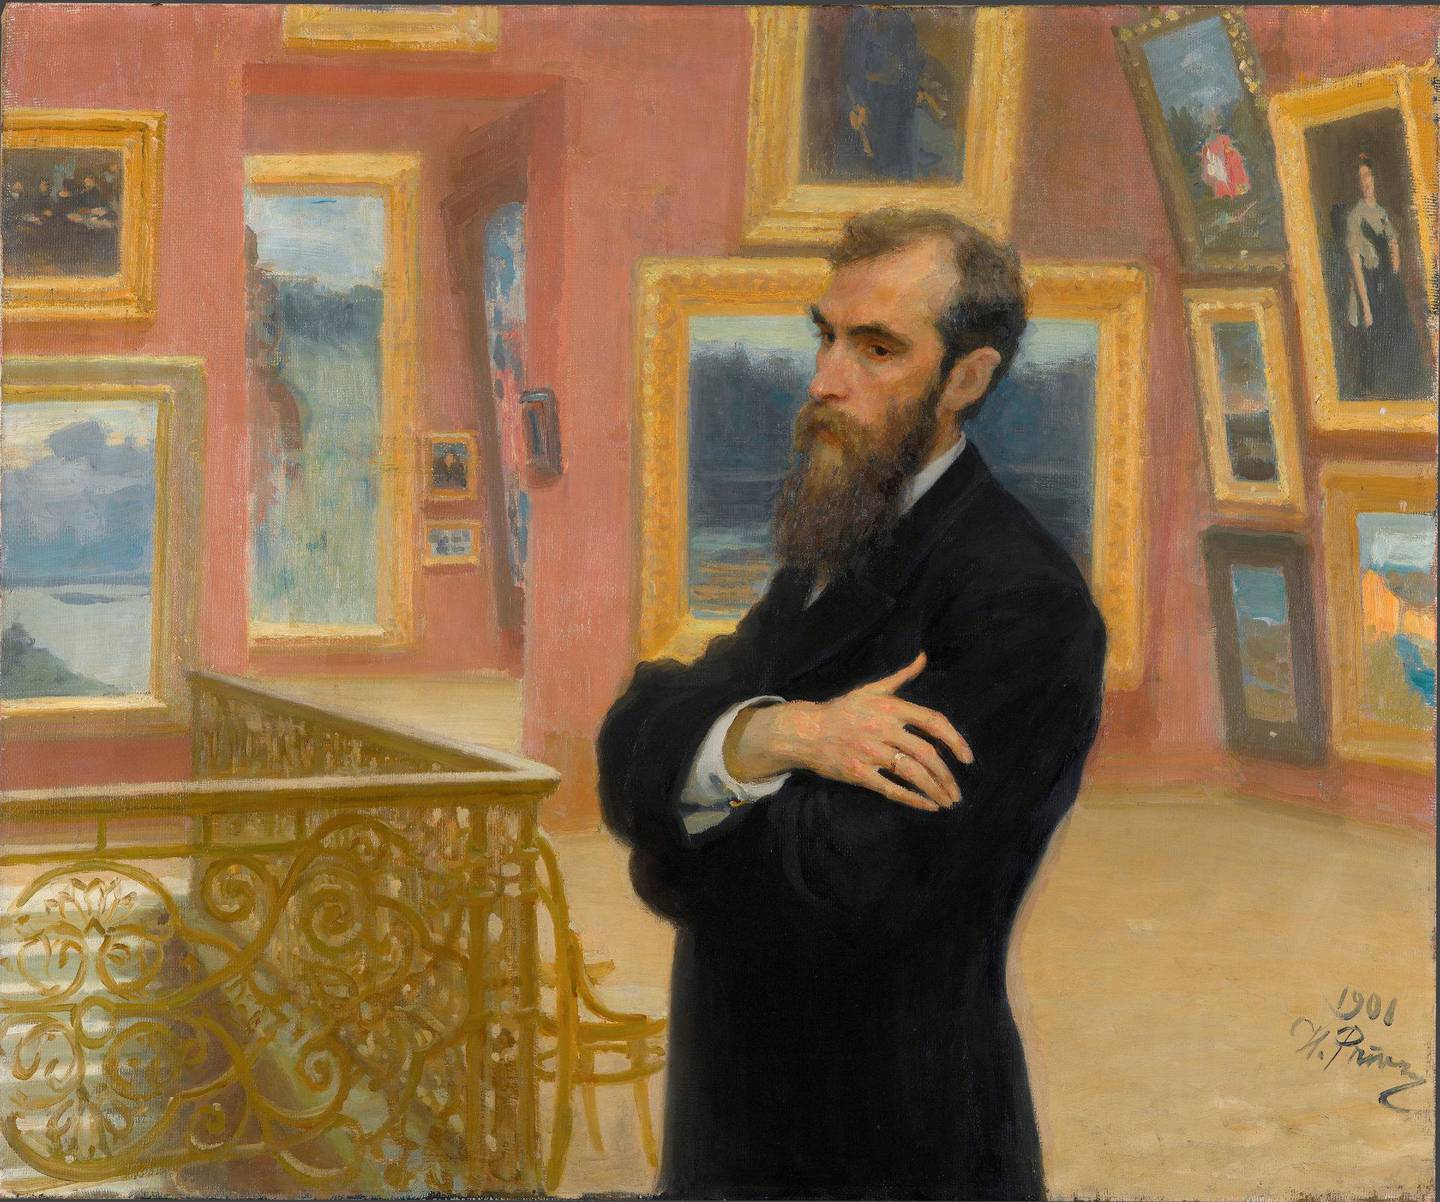 Ilja Repin er den mest berømte kunstneren fra perioden ut­stillingen omfatter. Hans portrett av kunstsamleren Pavel Tretjakov viser inspirasjon fra impresjon­istene.Tretjakov-galleriet regnes som ett av verdens viktigste kunstmuseer.FOTO: TRETJAKOV-GALLERIET